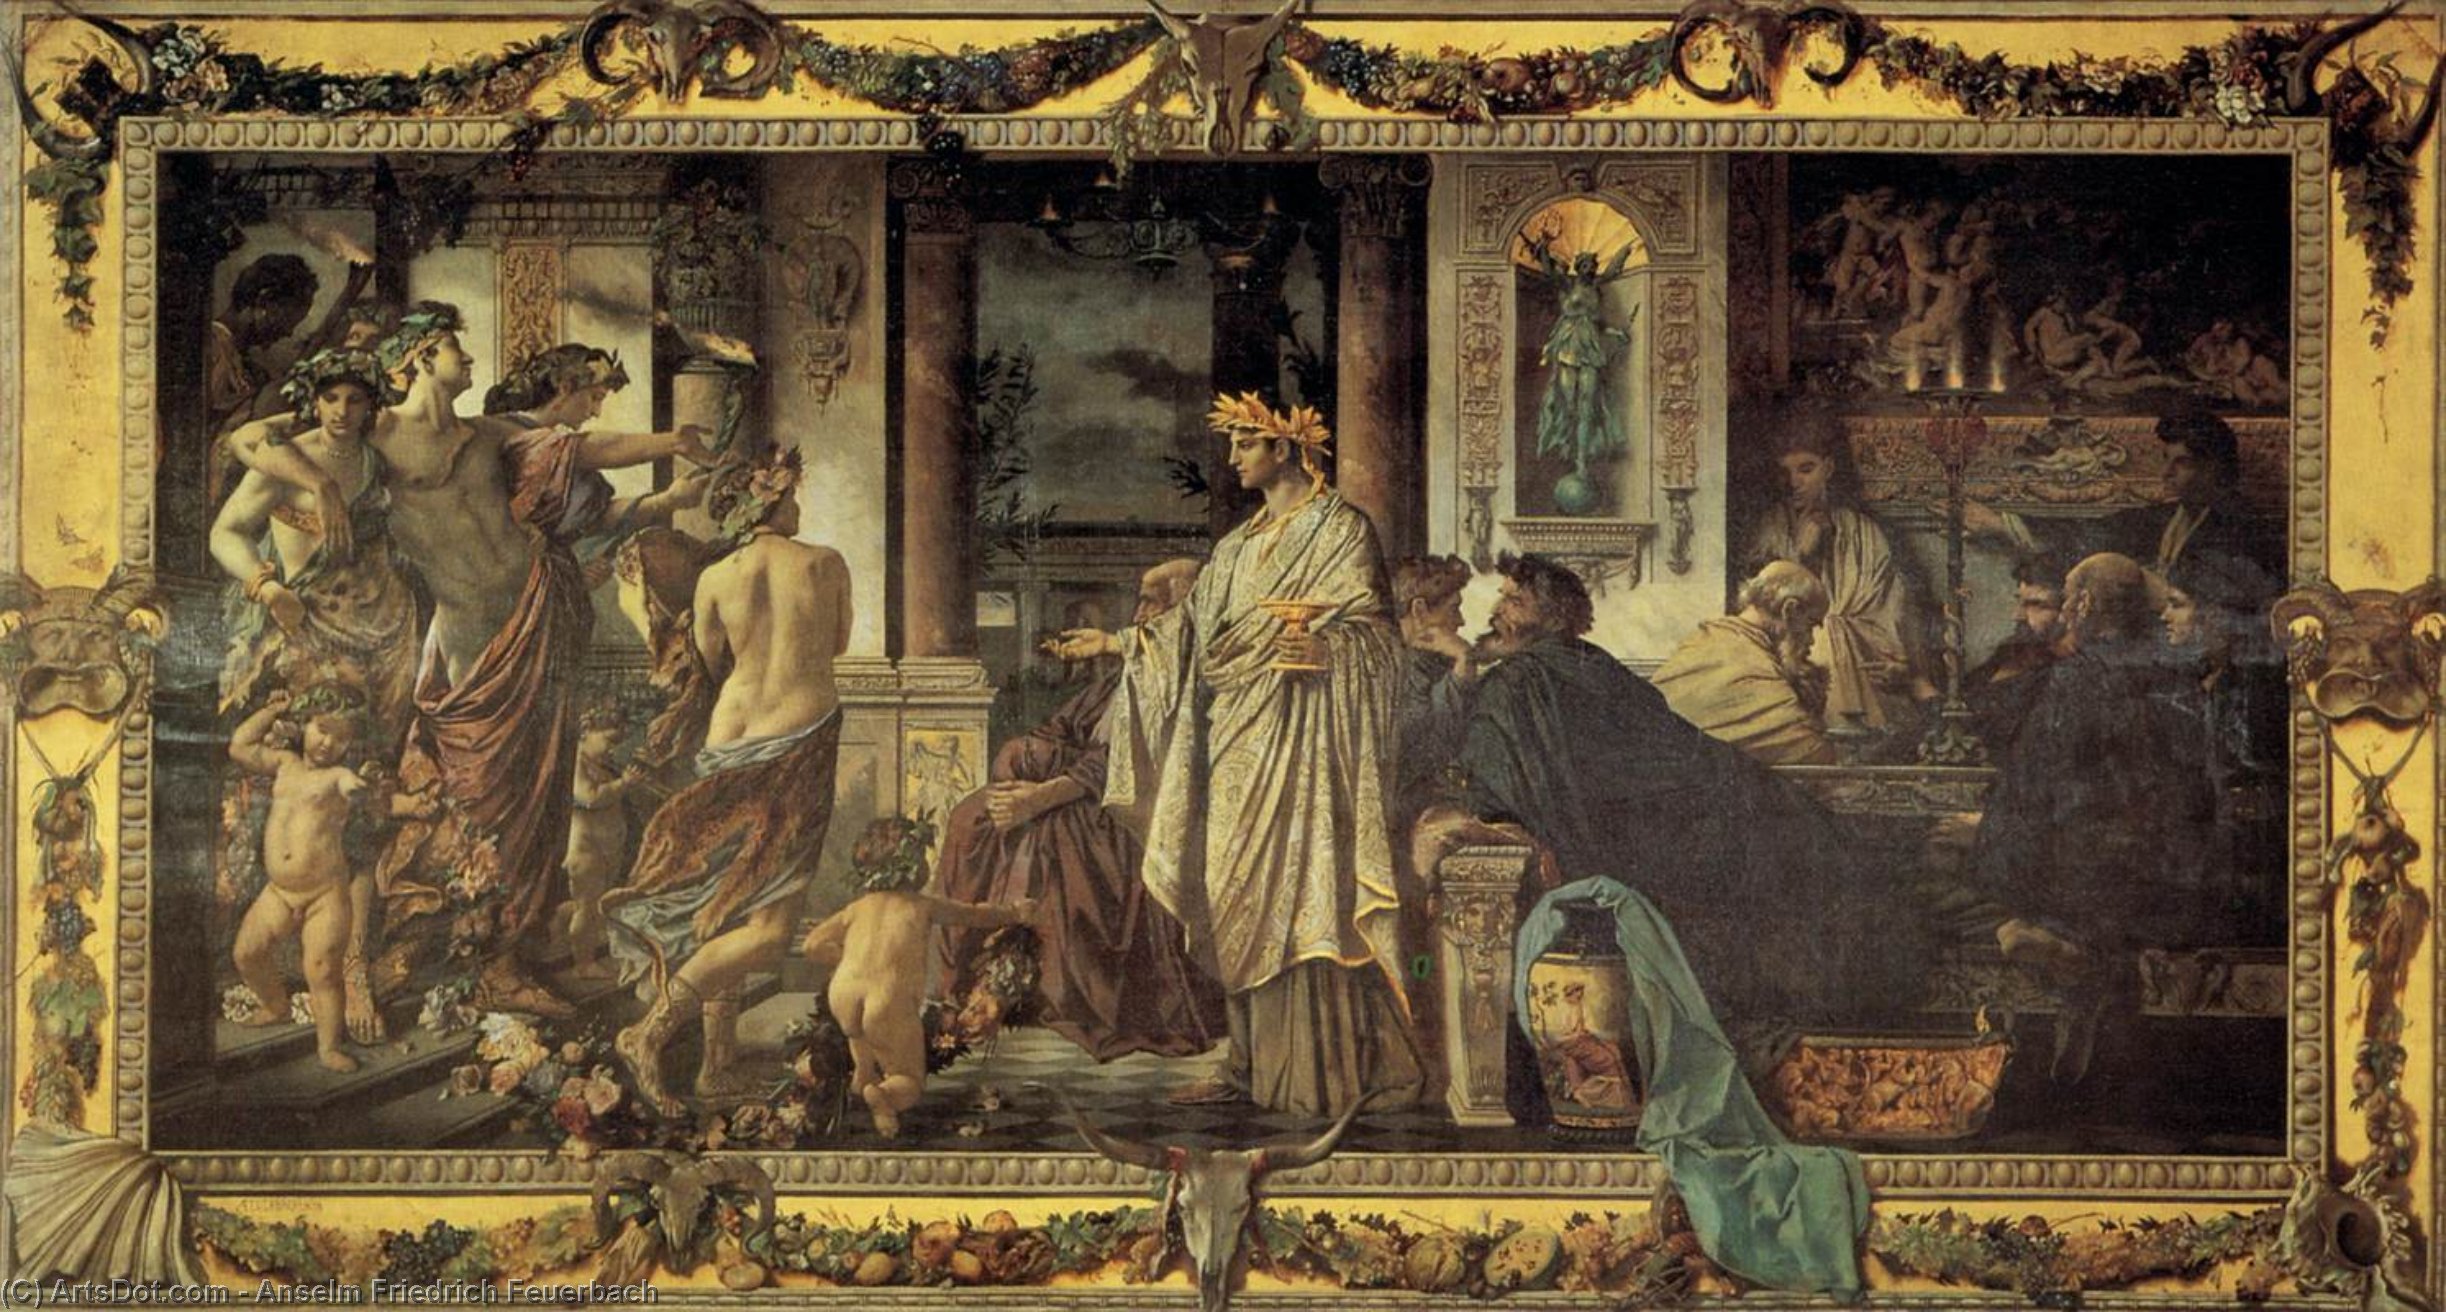 WikiOO.org - Encyclopedia of Fine Arts - Schilderen, Artwork Anselm Friedrich Feuerbach - Platonic Banquet